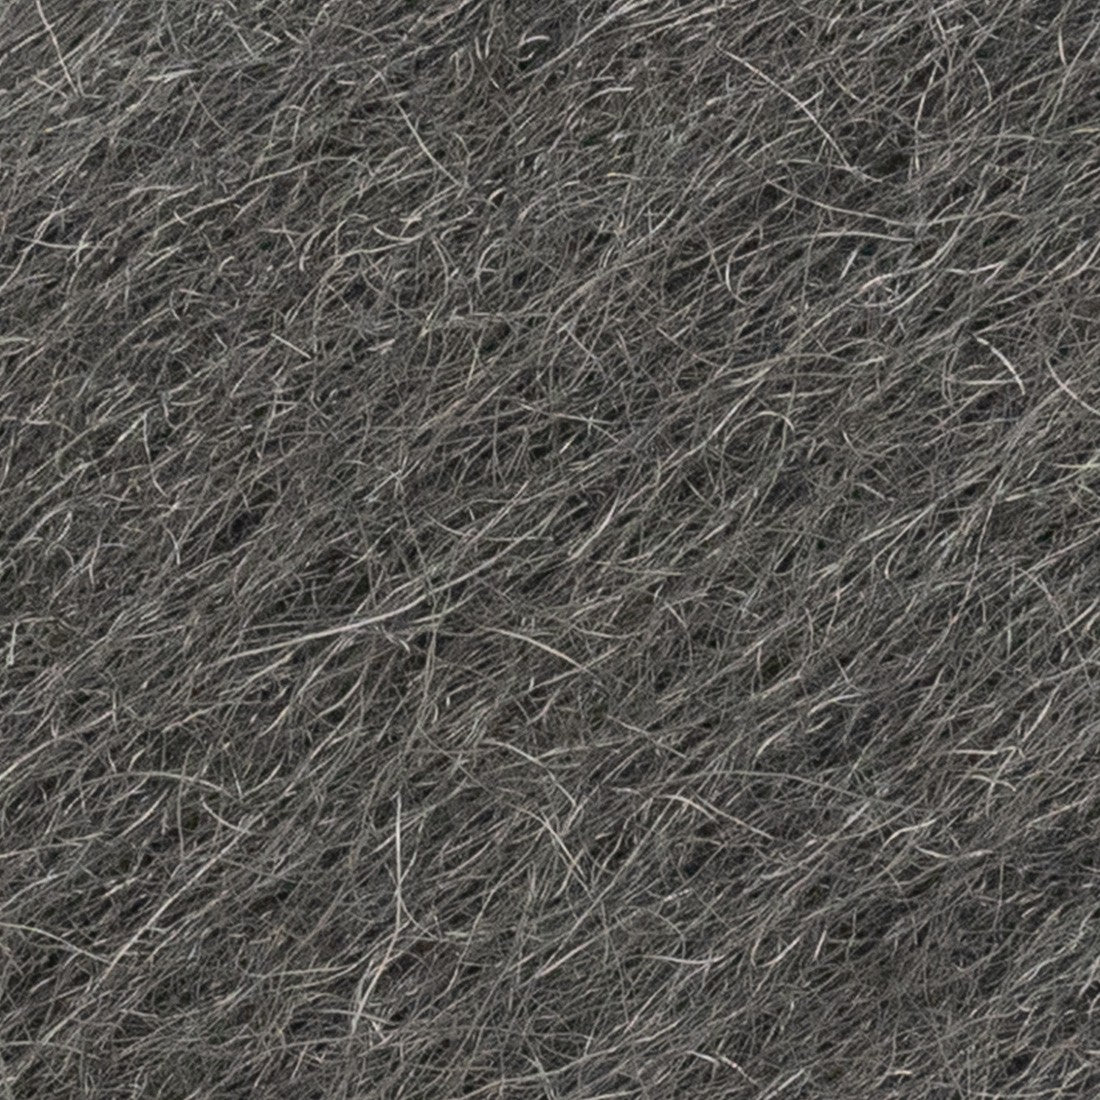 Moerman GeKKo Pad Steel Wool - 14 Inch Steel Wool Close-Up View